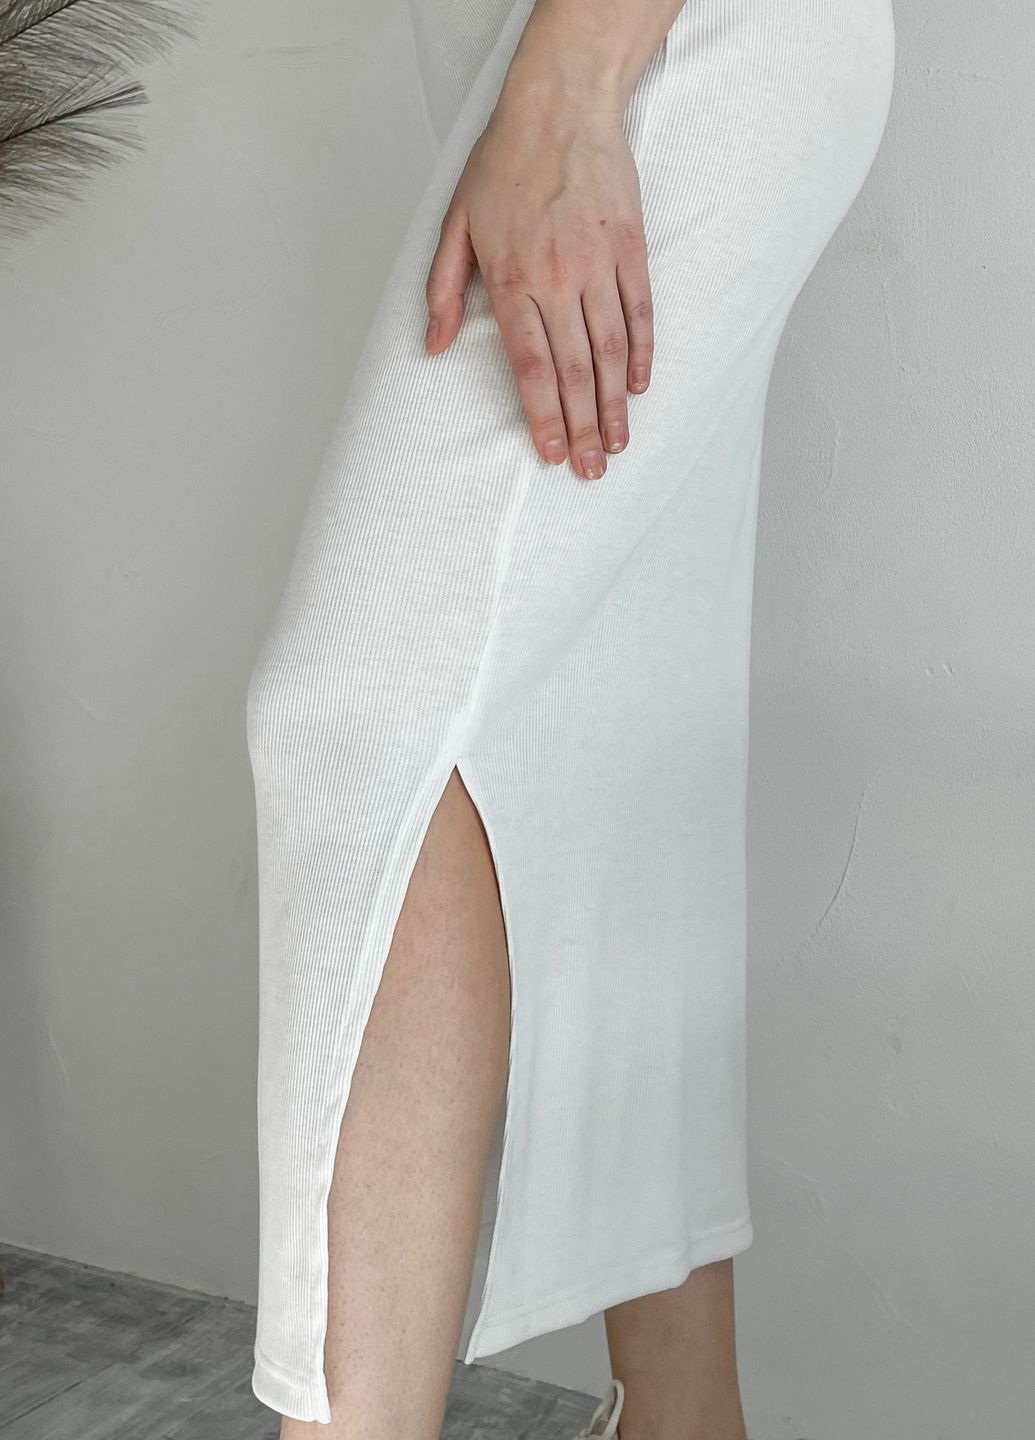 Купить Длинное платье-футболка в рубчик белое Merlini Кассо 700000126 размер 42-44 (S-M) в интернет-магазине